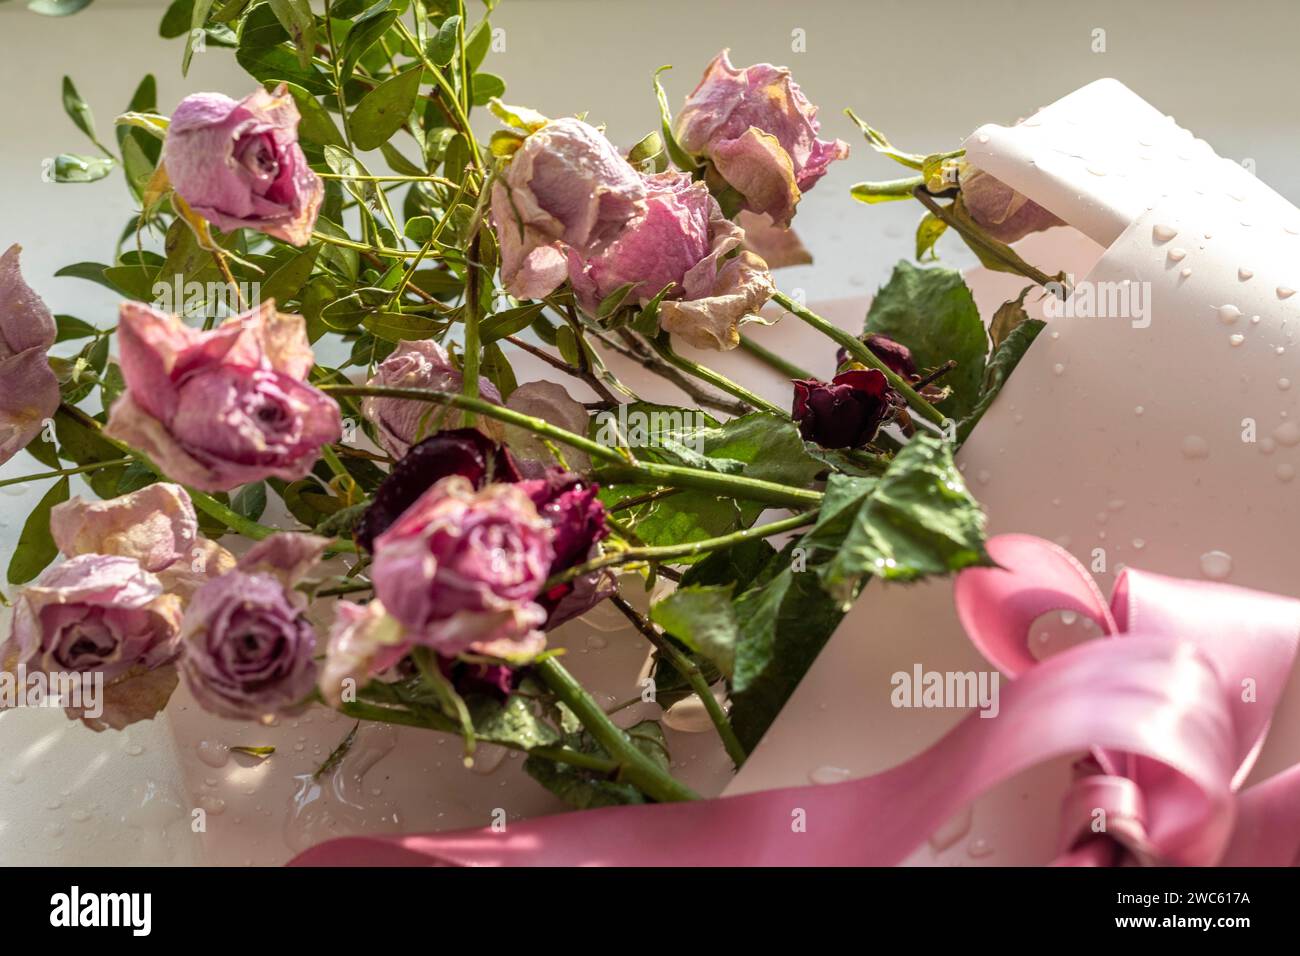 Konzeptaufnahme des Hintergrundthemas, Geschenkpapier, getrocknete Rosen, Blumen und andere Gestecke Stockfoto